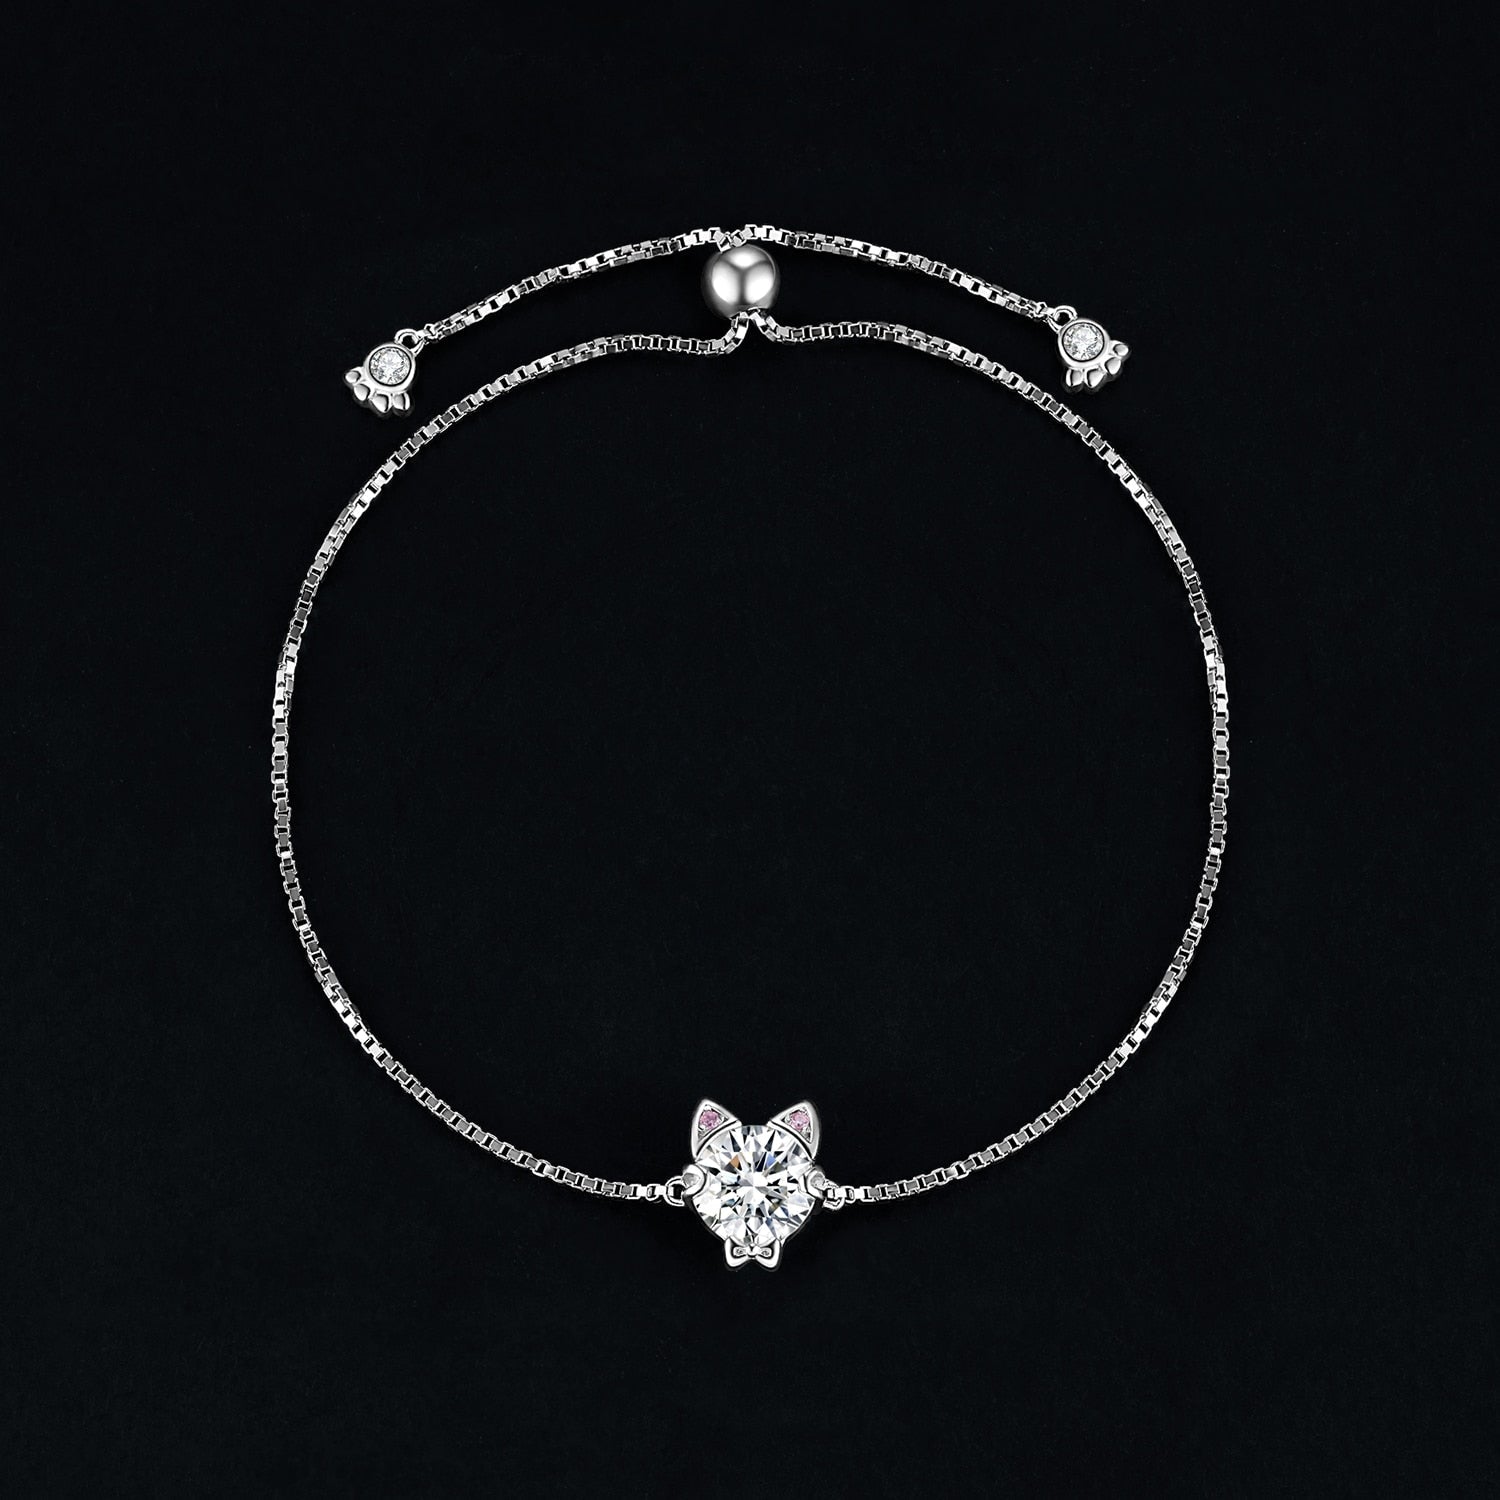 Kitty Cat Bracelet - Cat bracelet